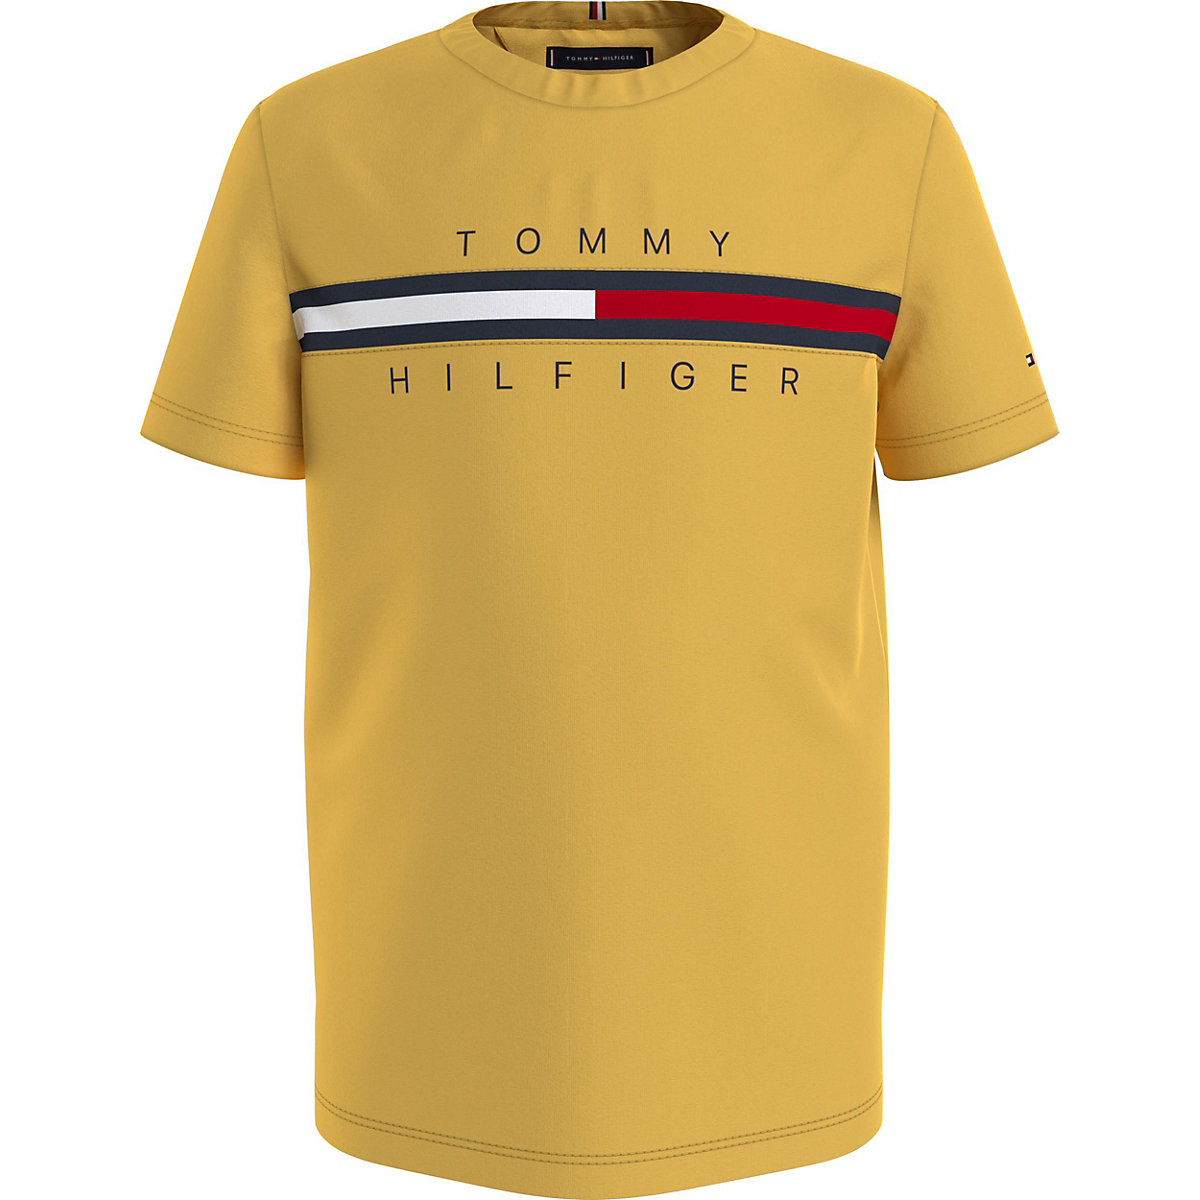 TOMMY HILFIGER T-Shirt für Jungen Organic Cotton gelb